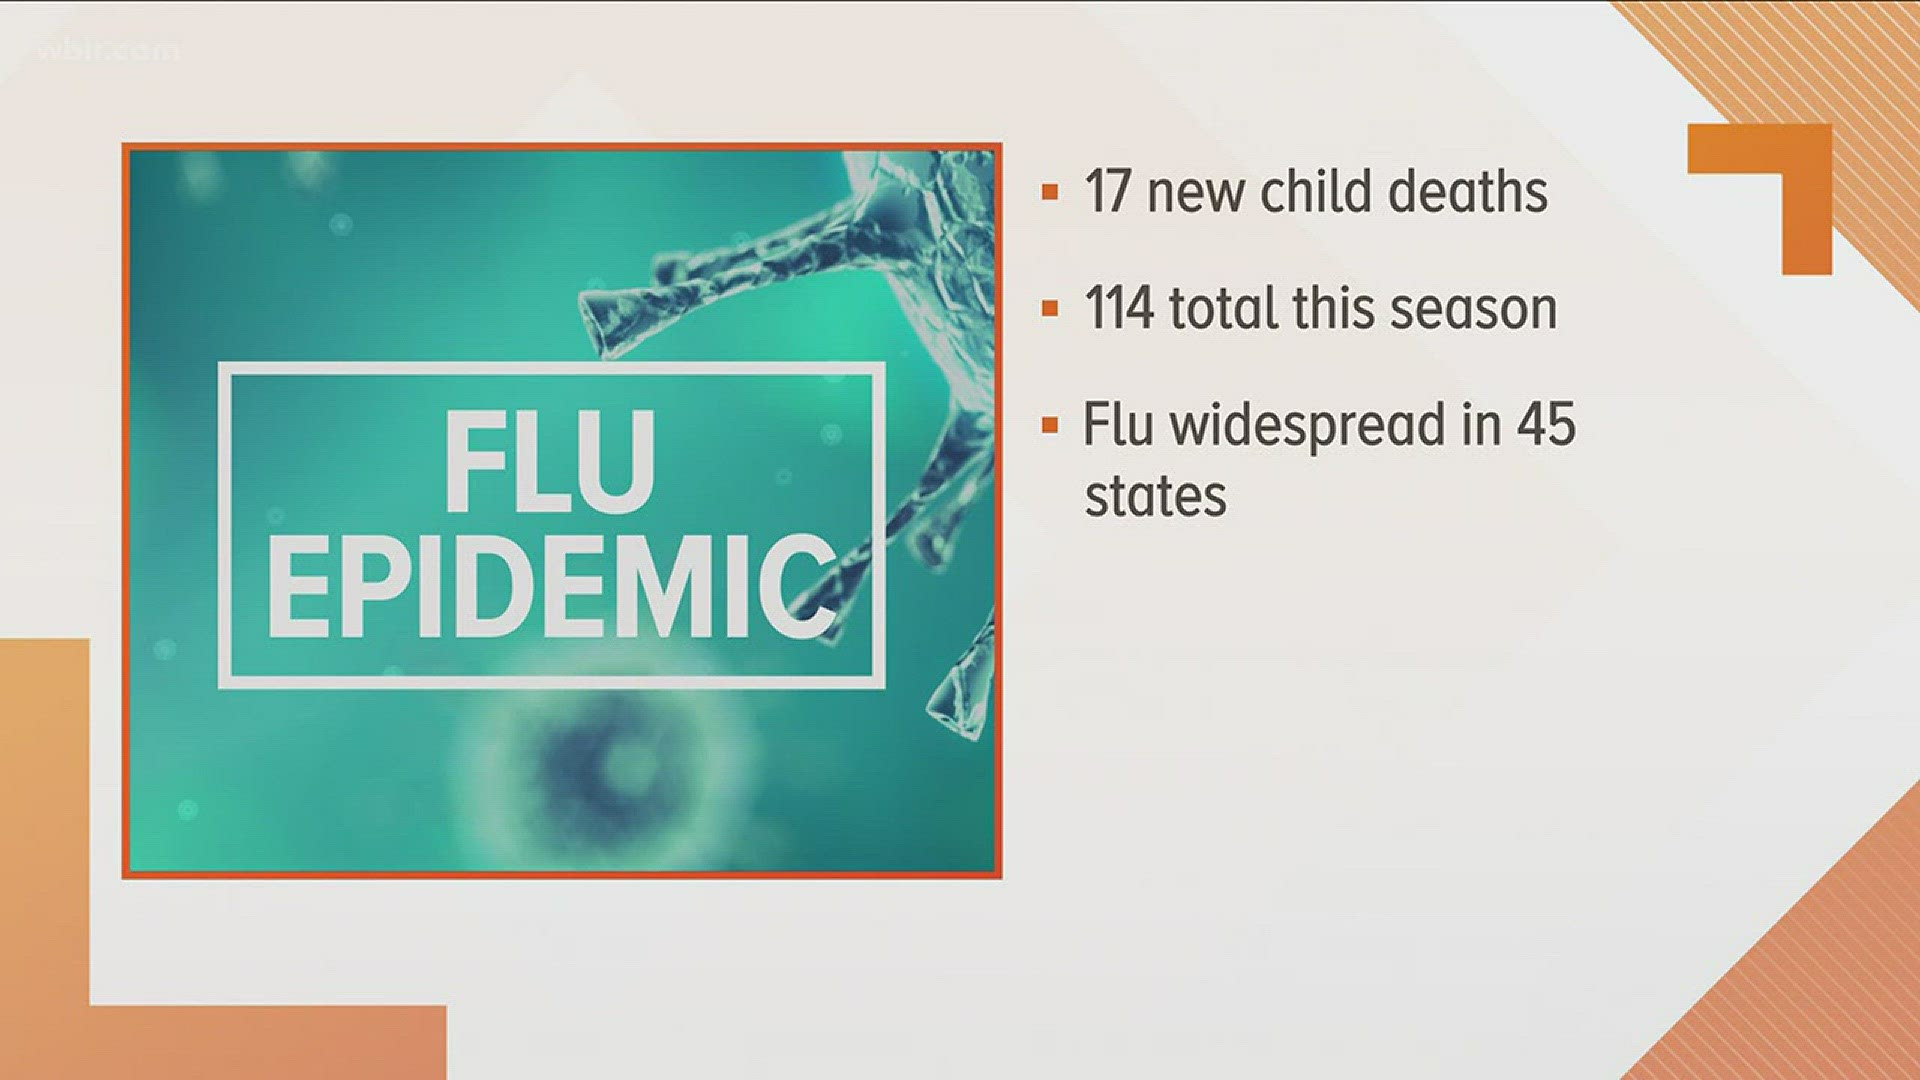 UTMC said twelve people have died this flu season at its hospital.